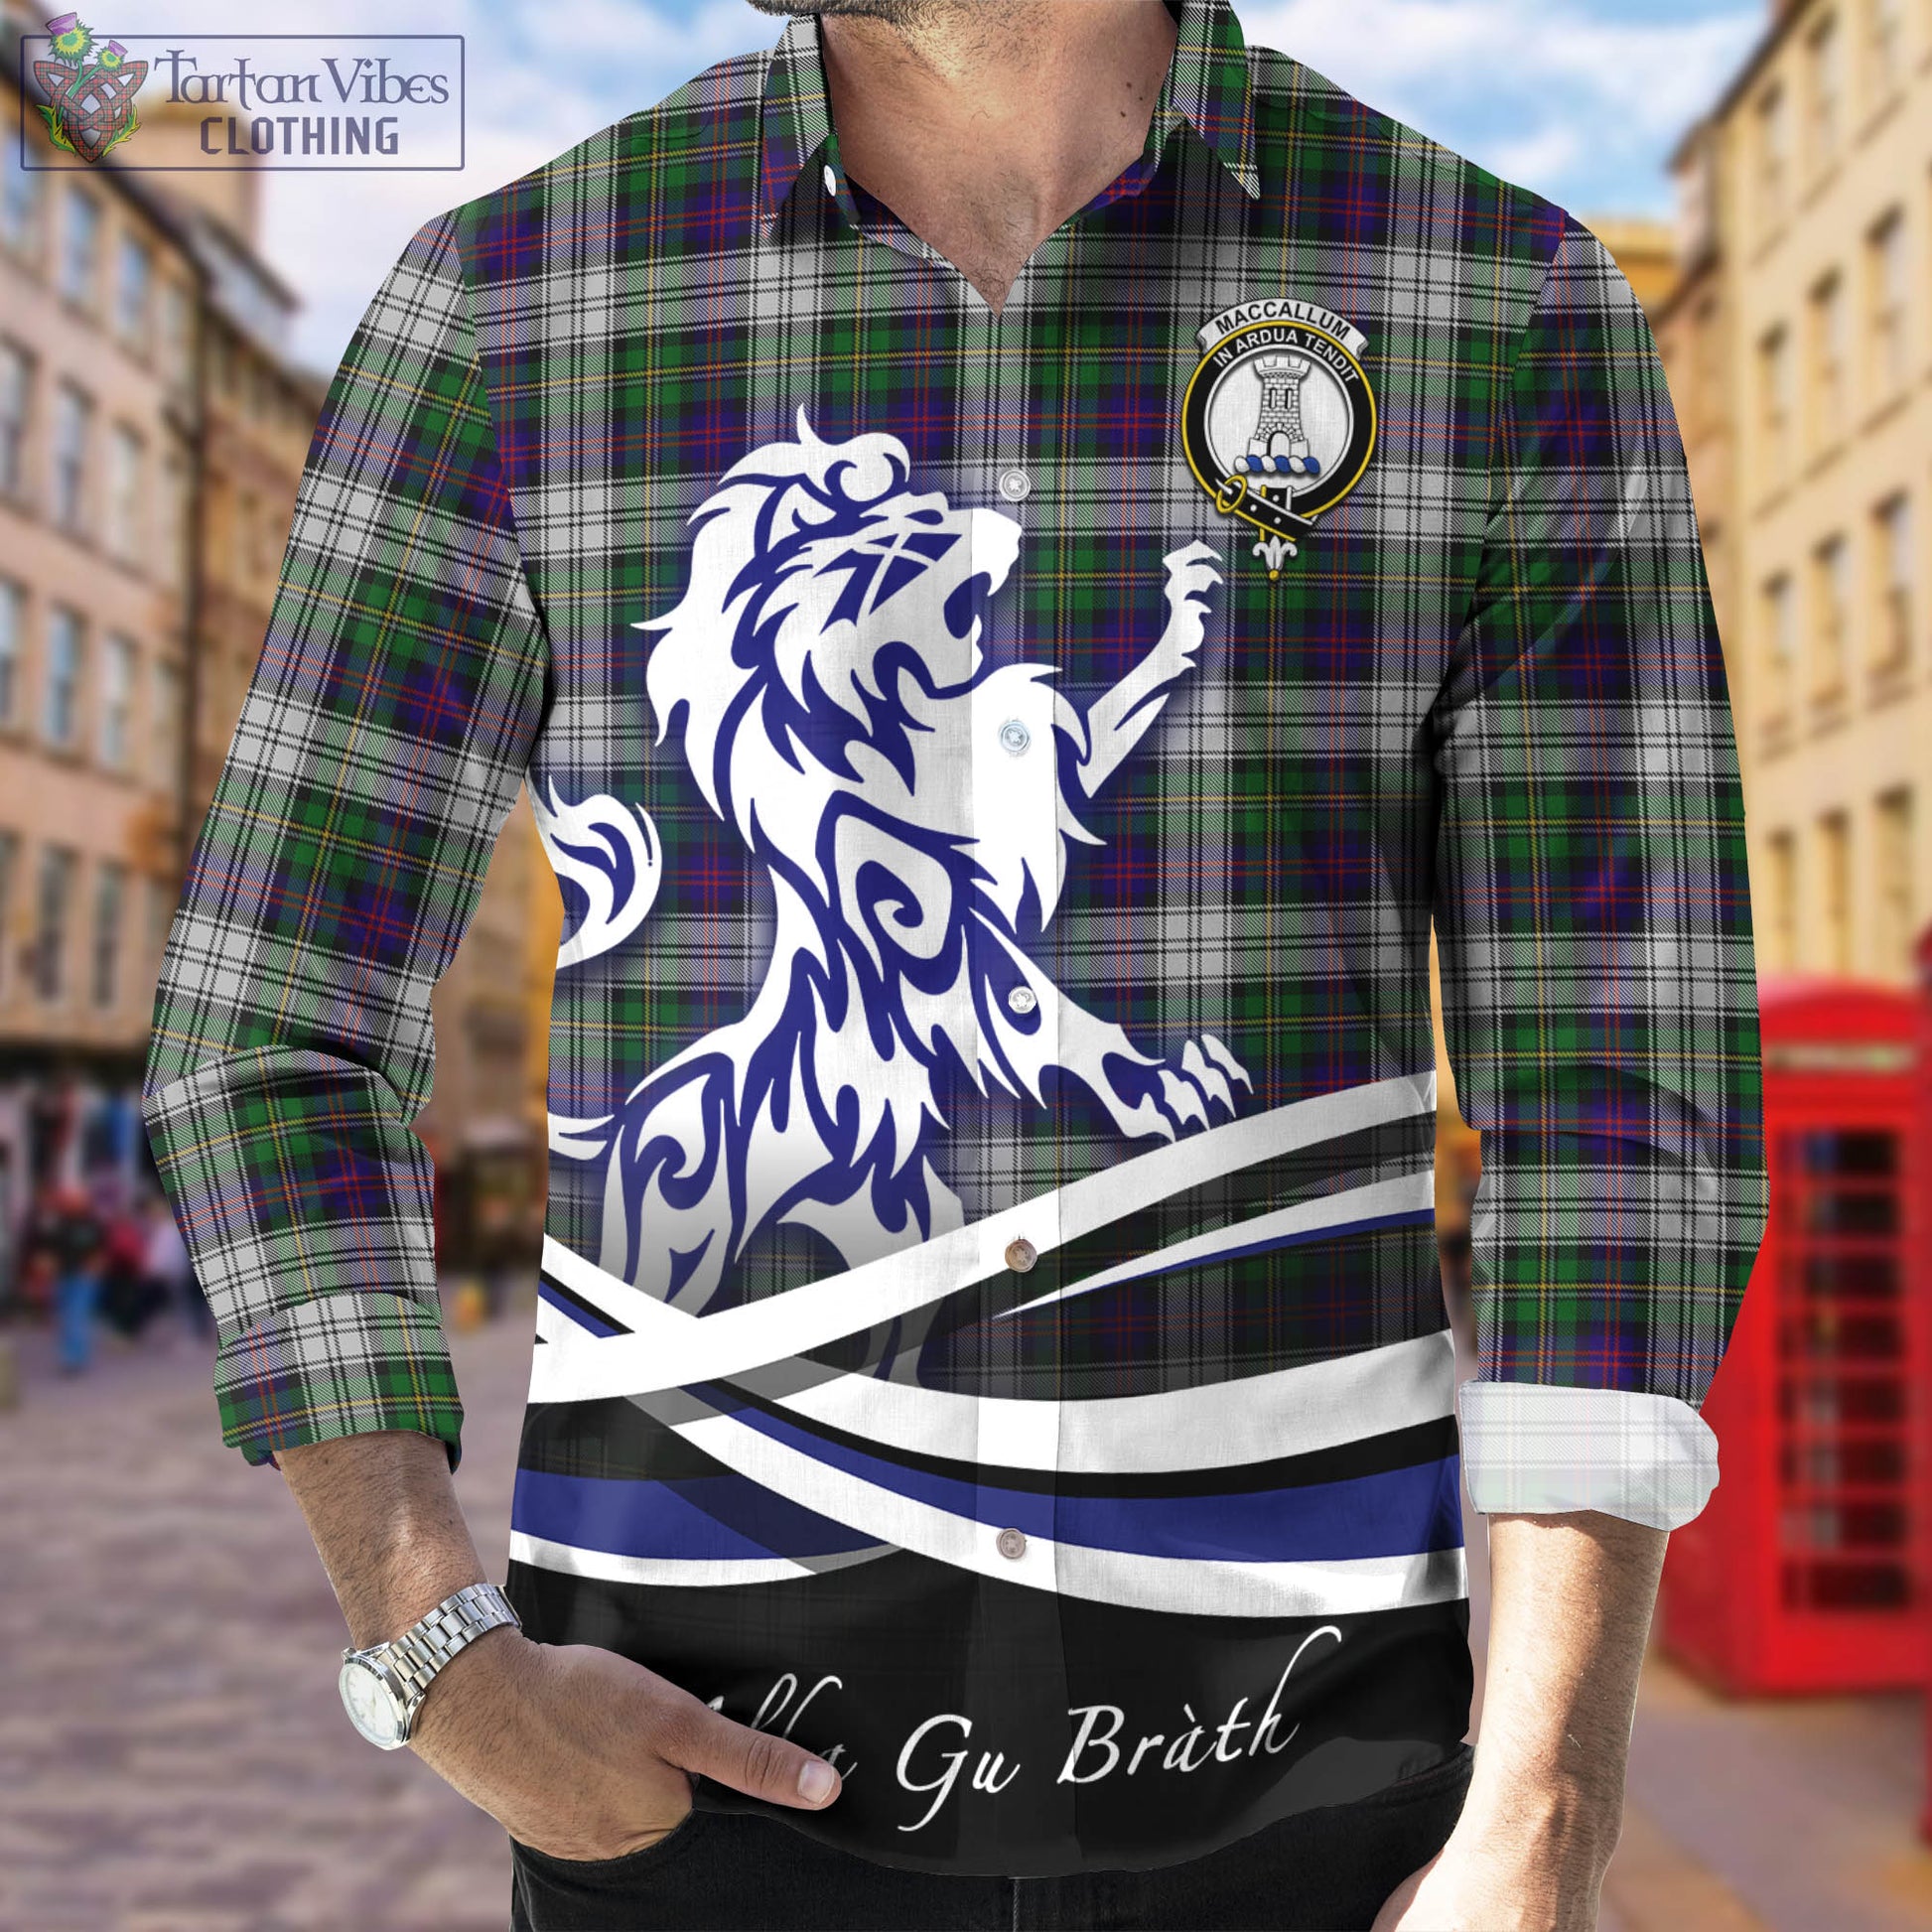 maccallum-dress-tartan-long-sleeve-button-up-shirt-with-alba-gu-brath-regal-lion-emblem